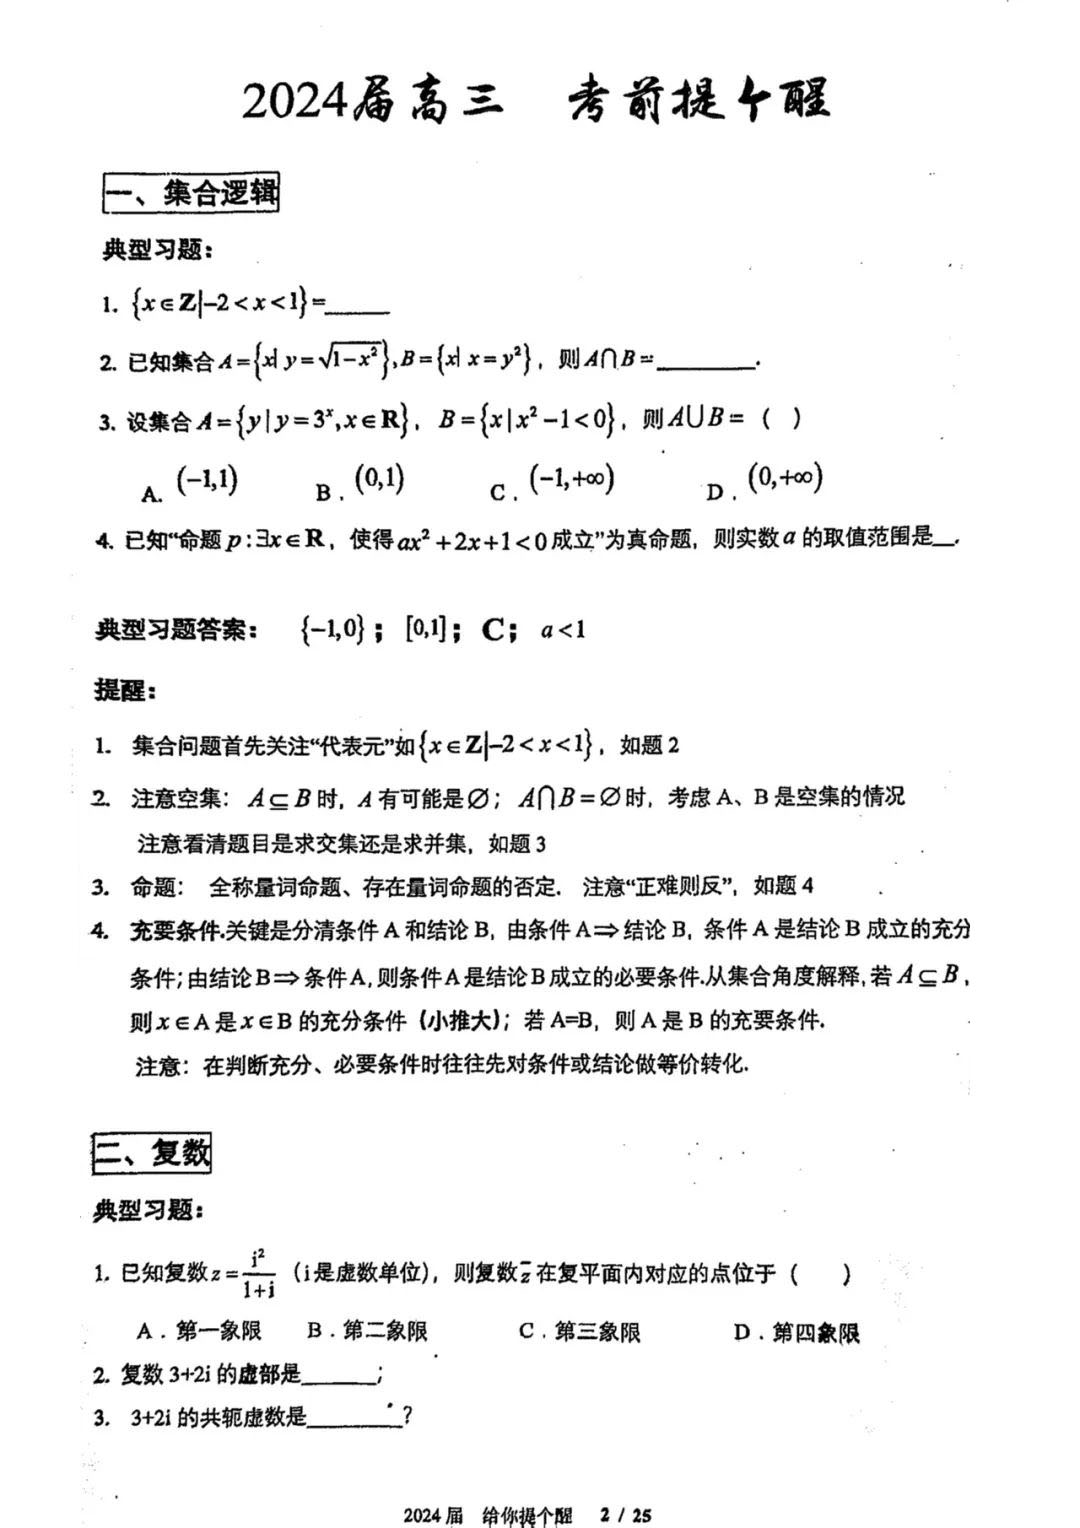 2024年北京人大附中高三考前提醒数学试题及答案